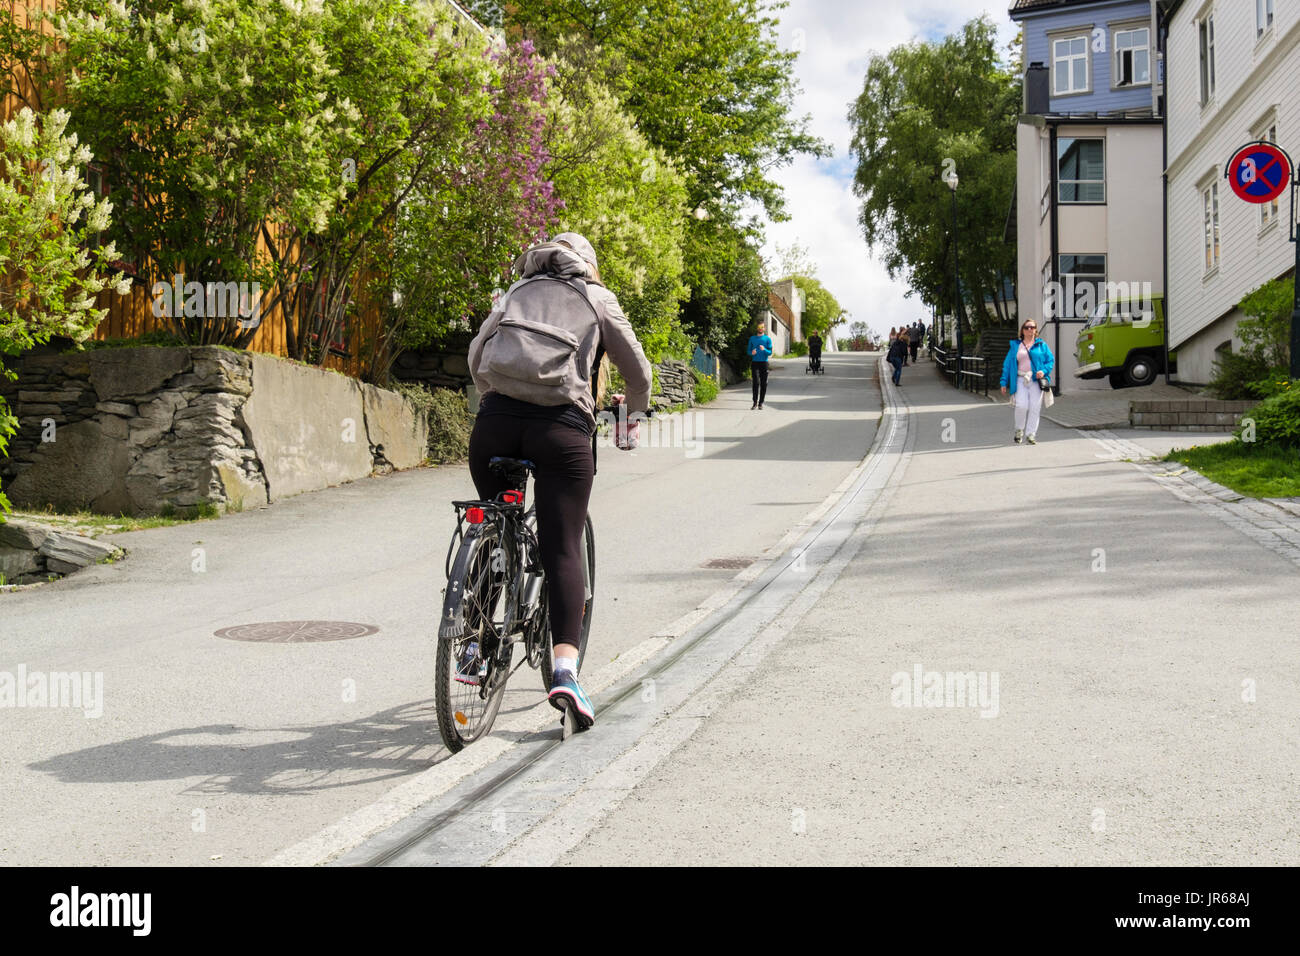 Persona in sella a una bicicletta utilizzando la bicicletta sollevare a correre in salita su una strada in salita nella città vecchia. Brubakken, Trondheim, Sør-Trøndelag, Norvegia e Scandinavia Foto Stock